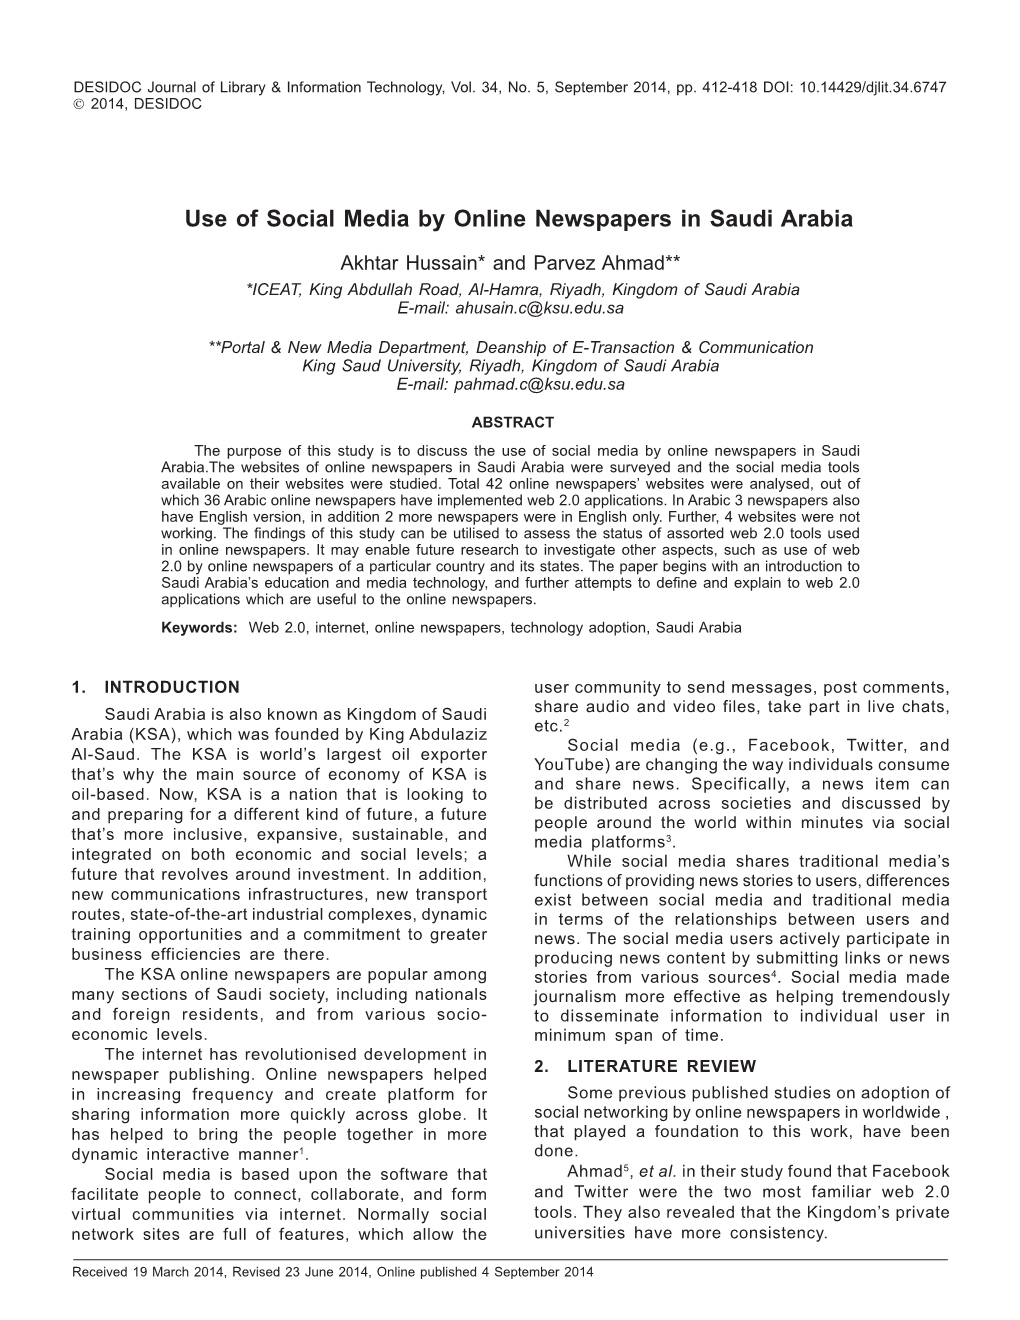 Use of Social Media by Online Newspapers in Saudi Arabia